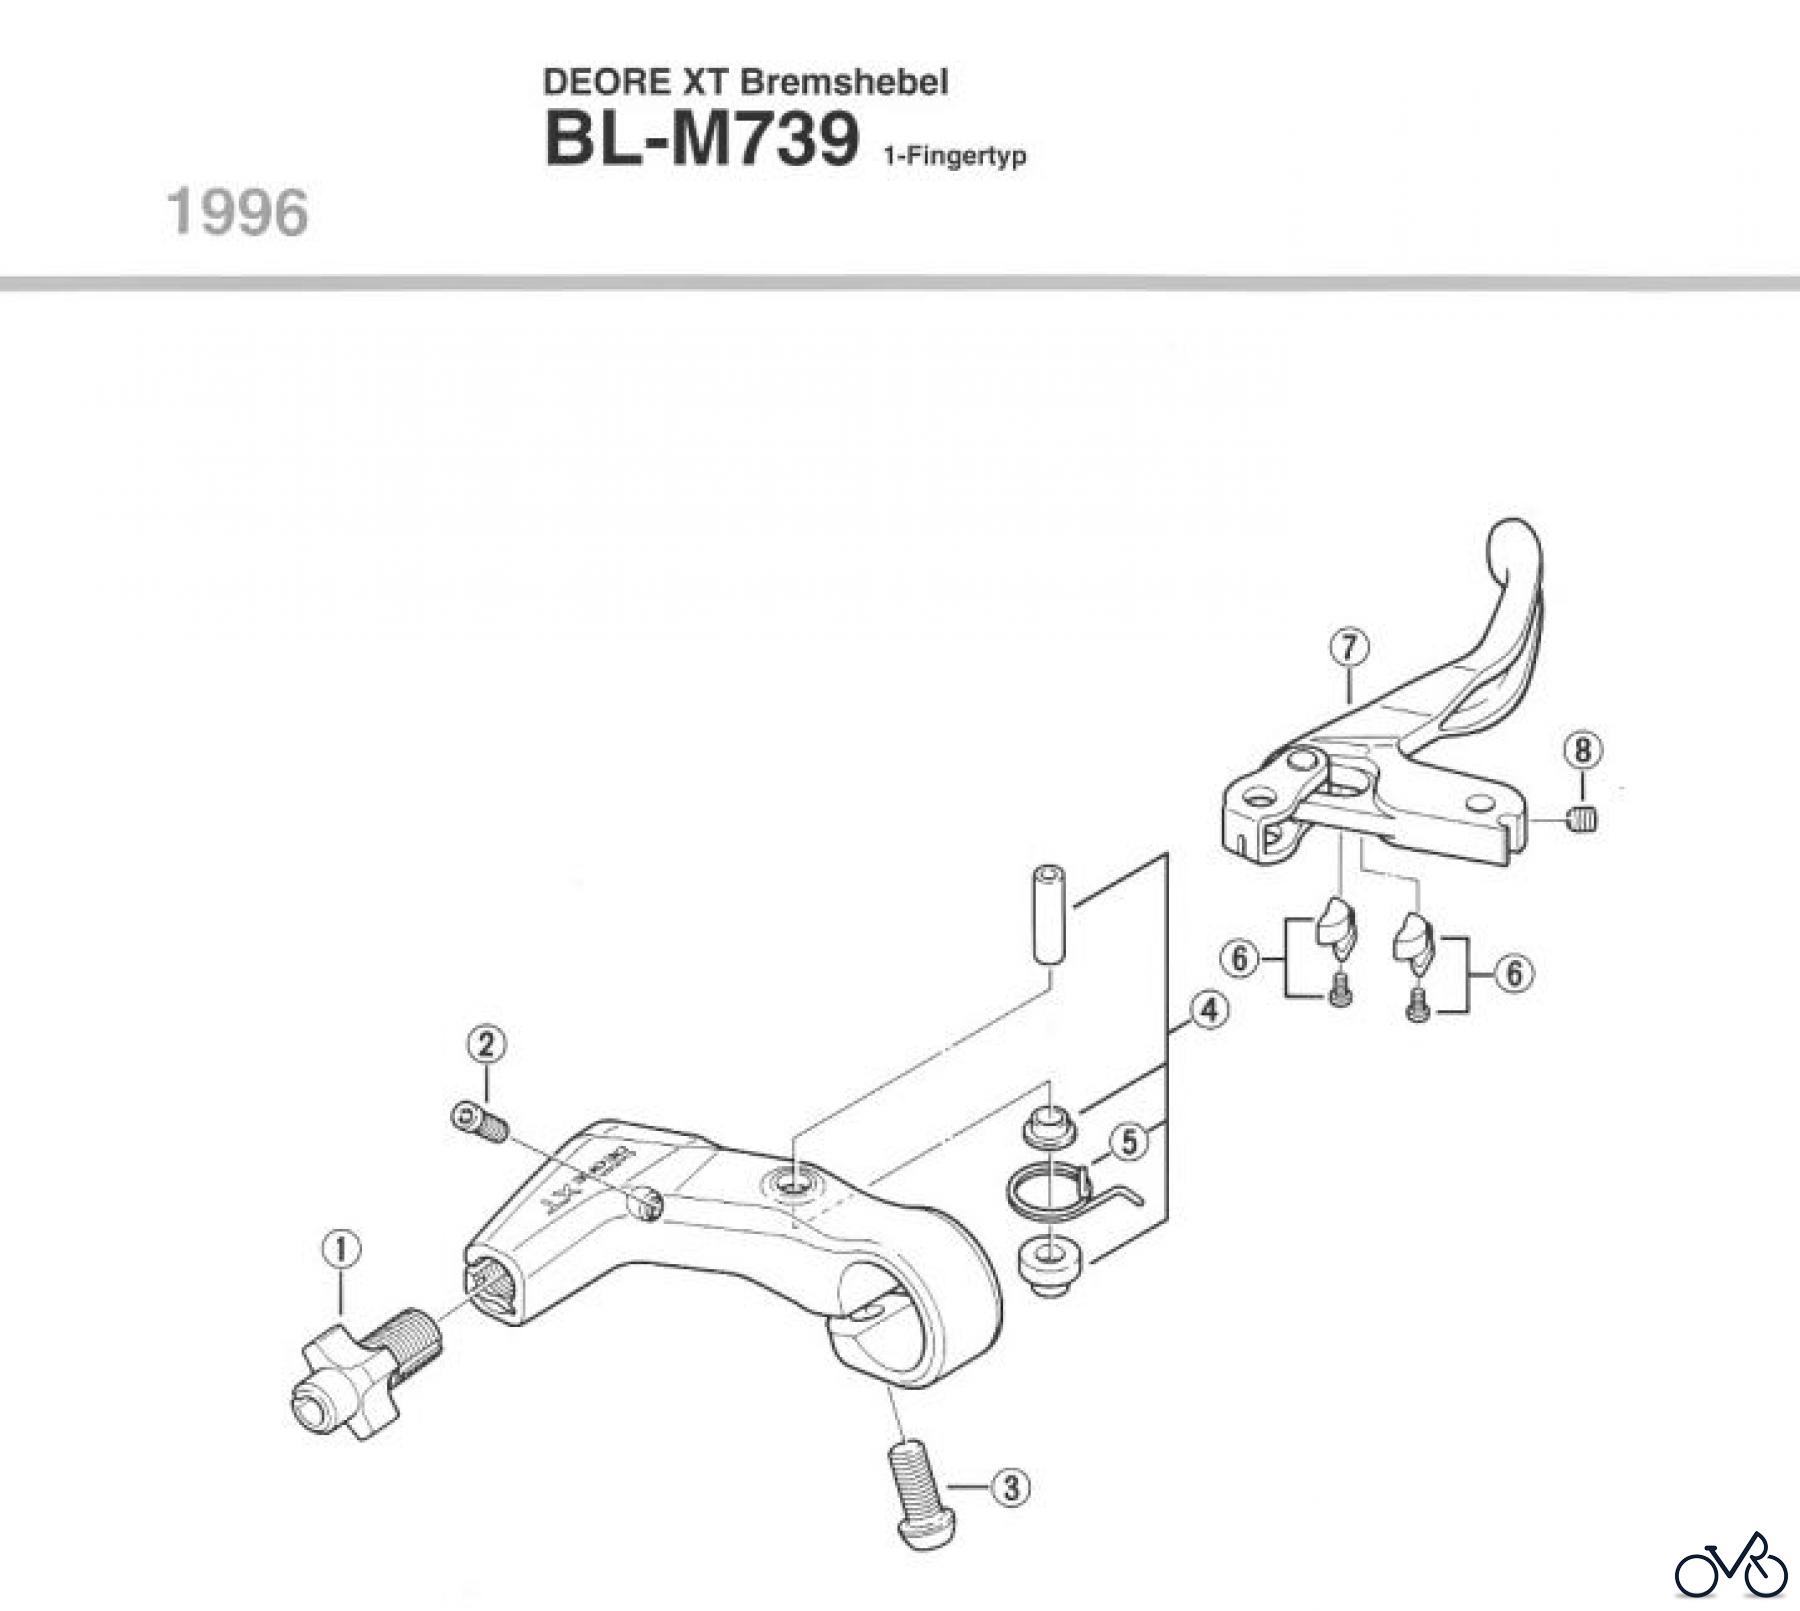  Shimano BL Brake Lever - Bremshebel BL-M739-96